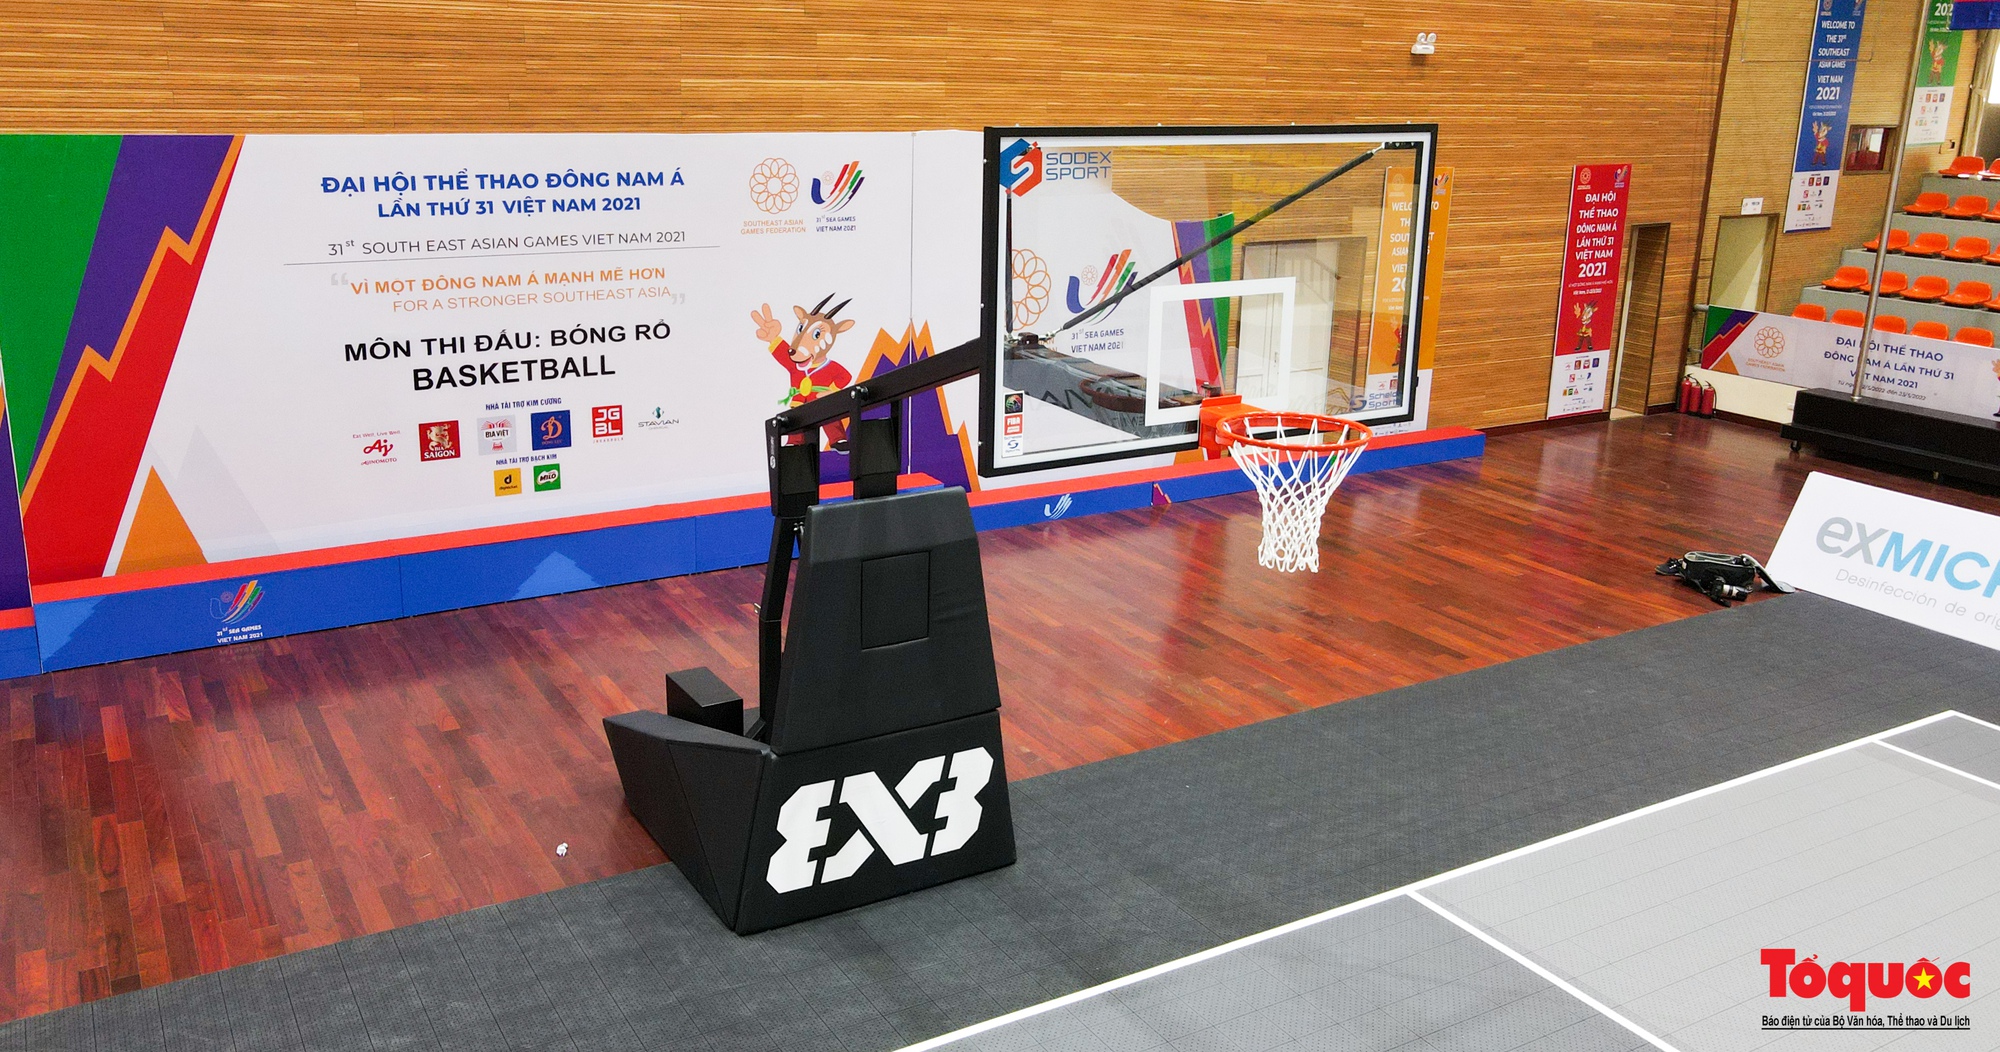 Cận cảnh nơi diễn ra môn bóng rổ SEA Games 31 - Ảnh 4.